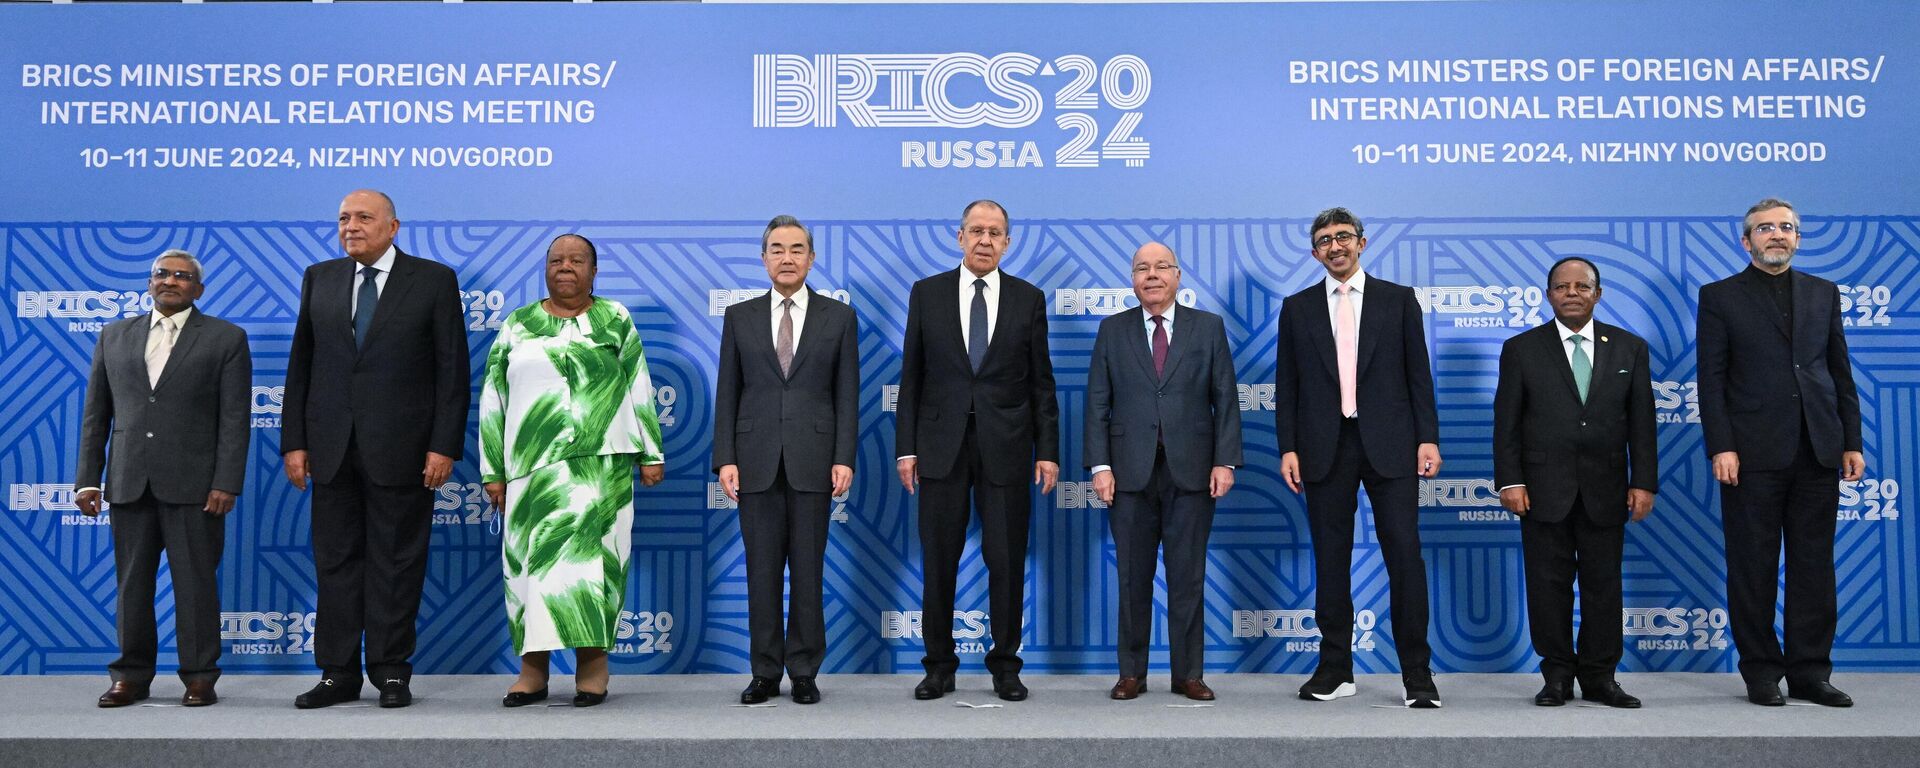 Da esquerda para a direita, responsáveis de Relações Exteriores de vários países: Dammu Ravi, da Índia; Sameh Shoukry, do Egito; Naledi Pandor, da África do Sul; Wang Yi, da China; Sergei Lavrov, da Rússia; Mauro Vieira, do Brasil; Abdullah bin Zayed Al Nahyan, dos Emirados Árabes Unidos; Taye Atskeselassie, da Etiópia; e Ali Bagheri, do Irã, durante foto conjunta para a reunião de ministros das Relações Exteriores do BRICS, em Nizhny Novgorod. Rússia, 10 de junho de 2024 - Sputnik Brasil, 1920, 11.06.2024